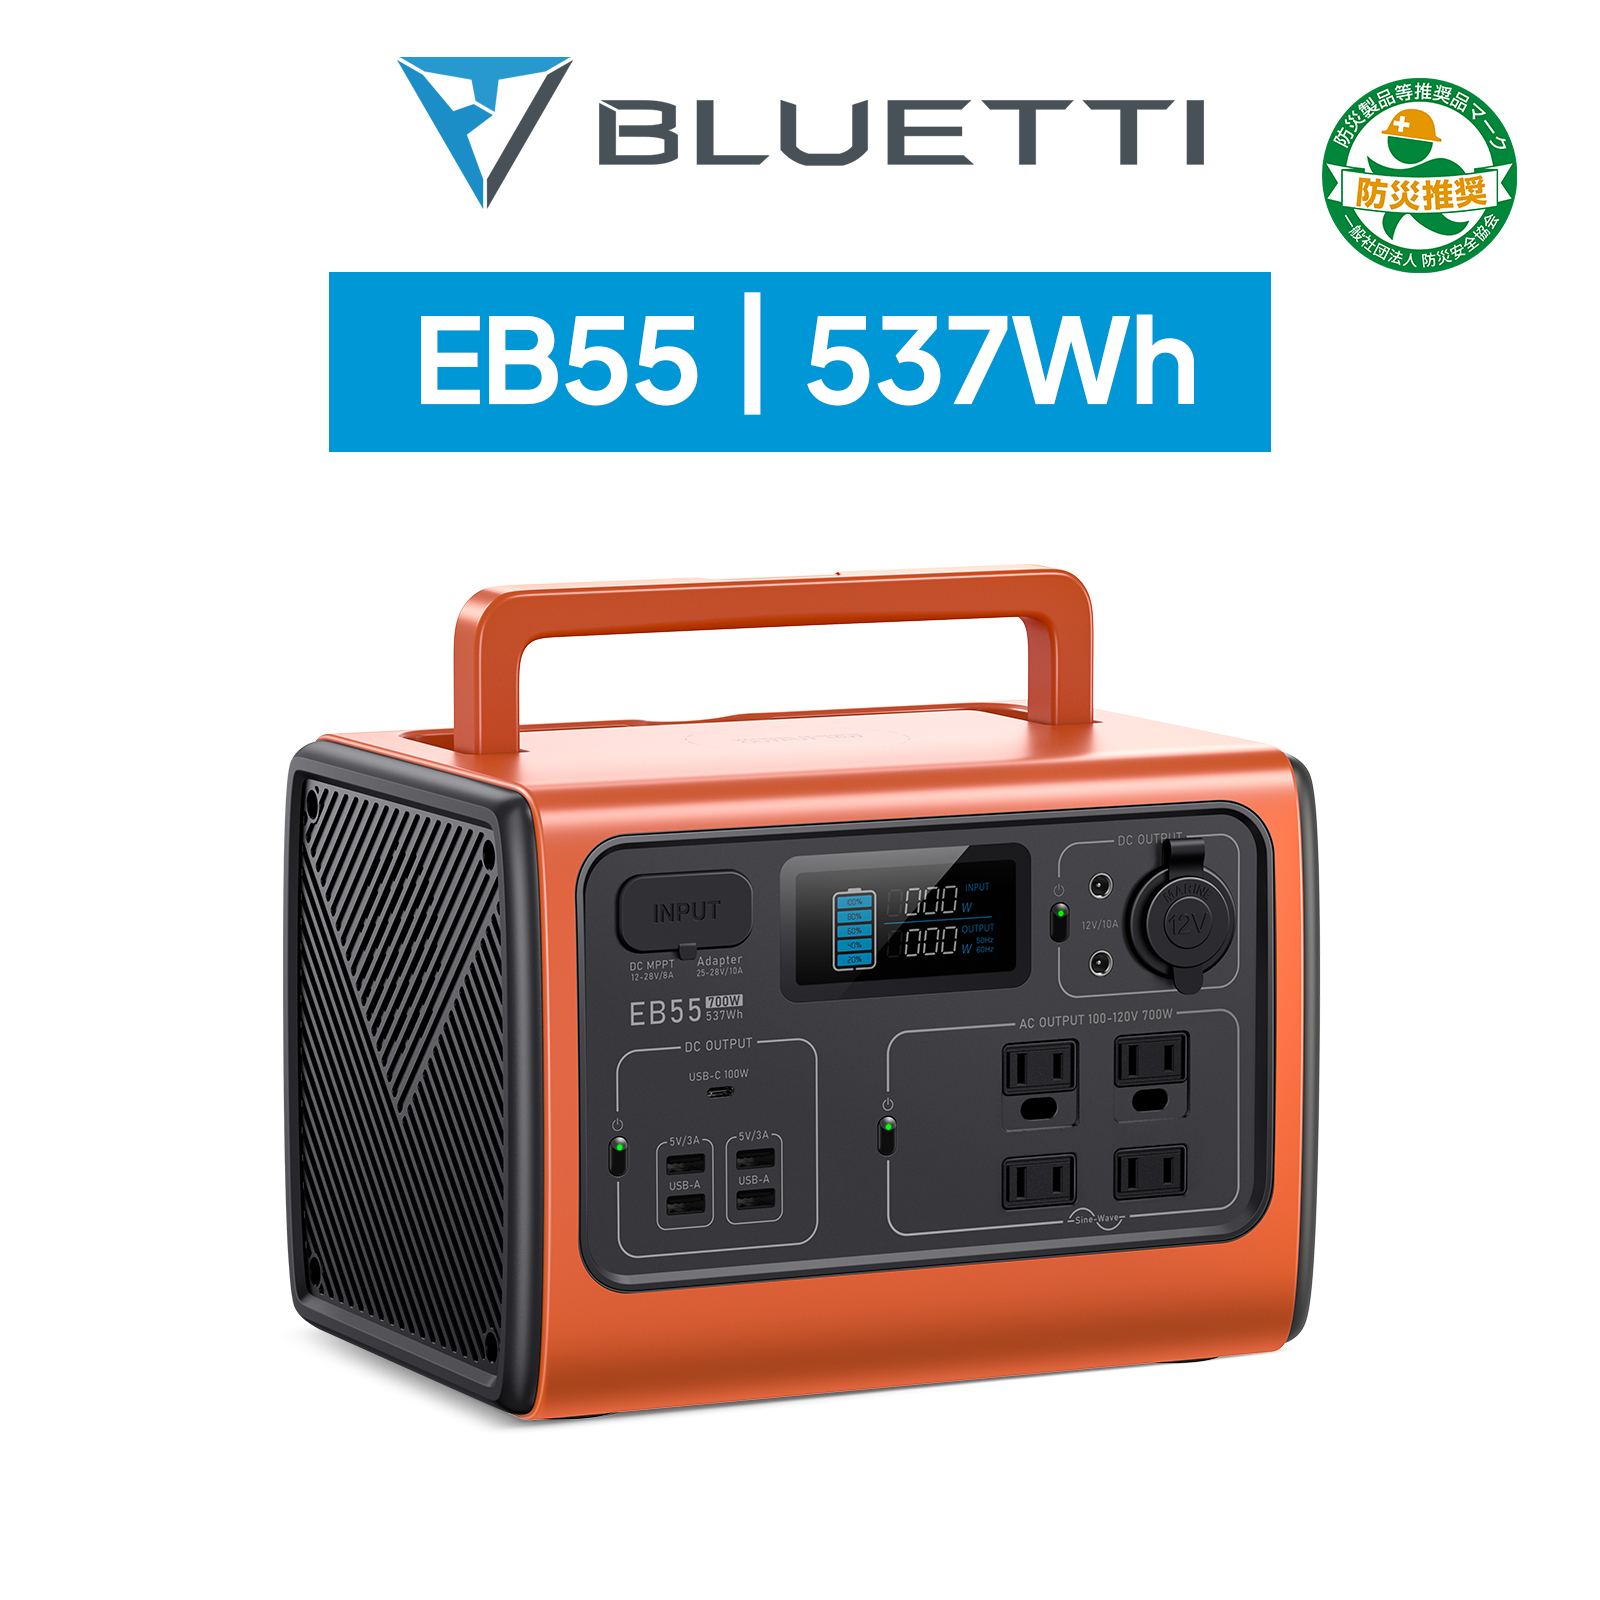 BLUETTI ポータブル電源 EB55 オレンジ 537Wh/700W リン酸鉄 蓄電池